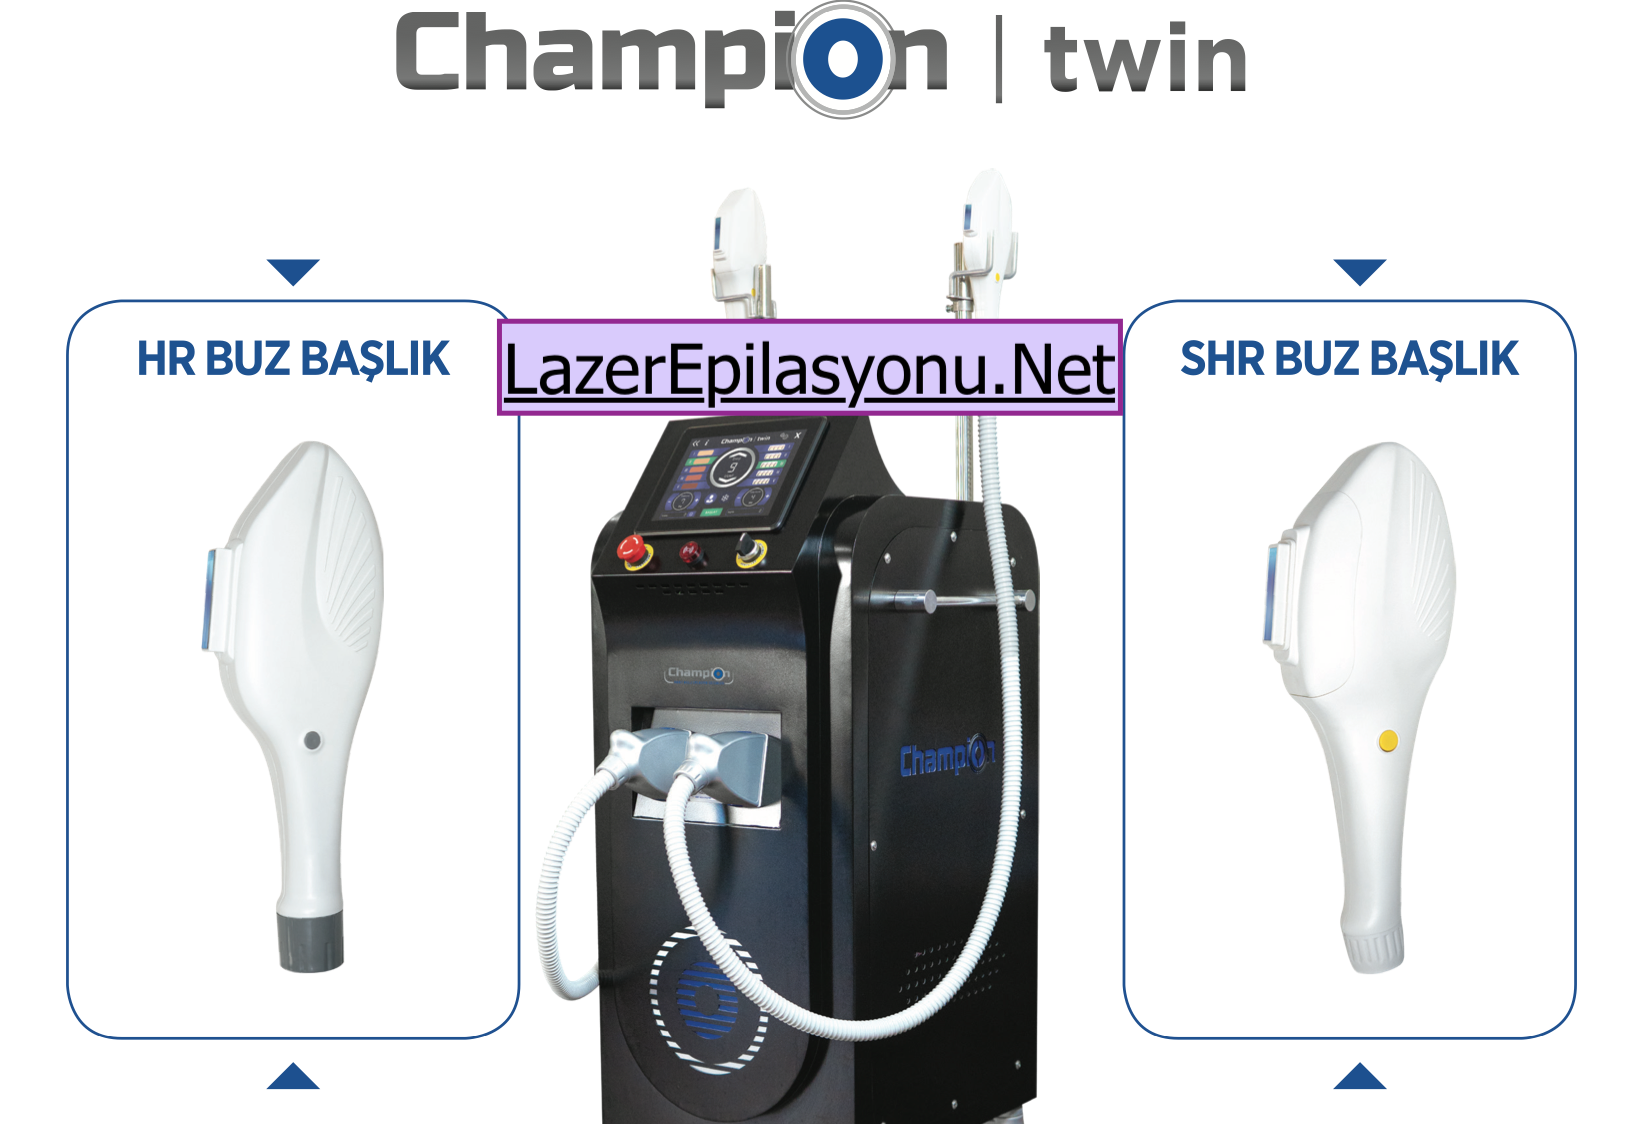 3. Champion Twin Multi Lazer Epilasyon Cihazı